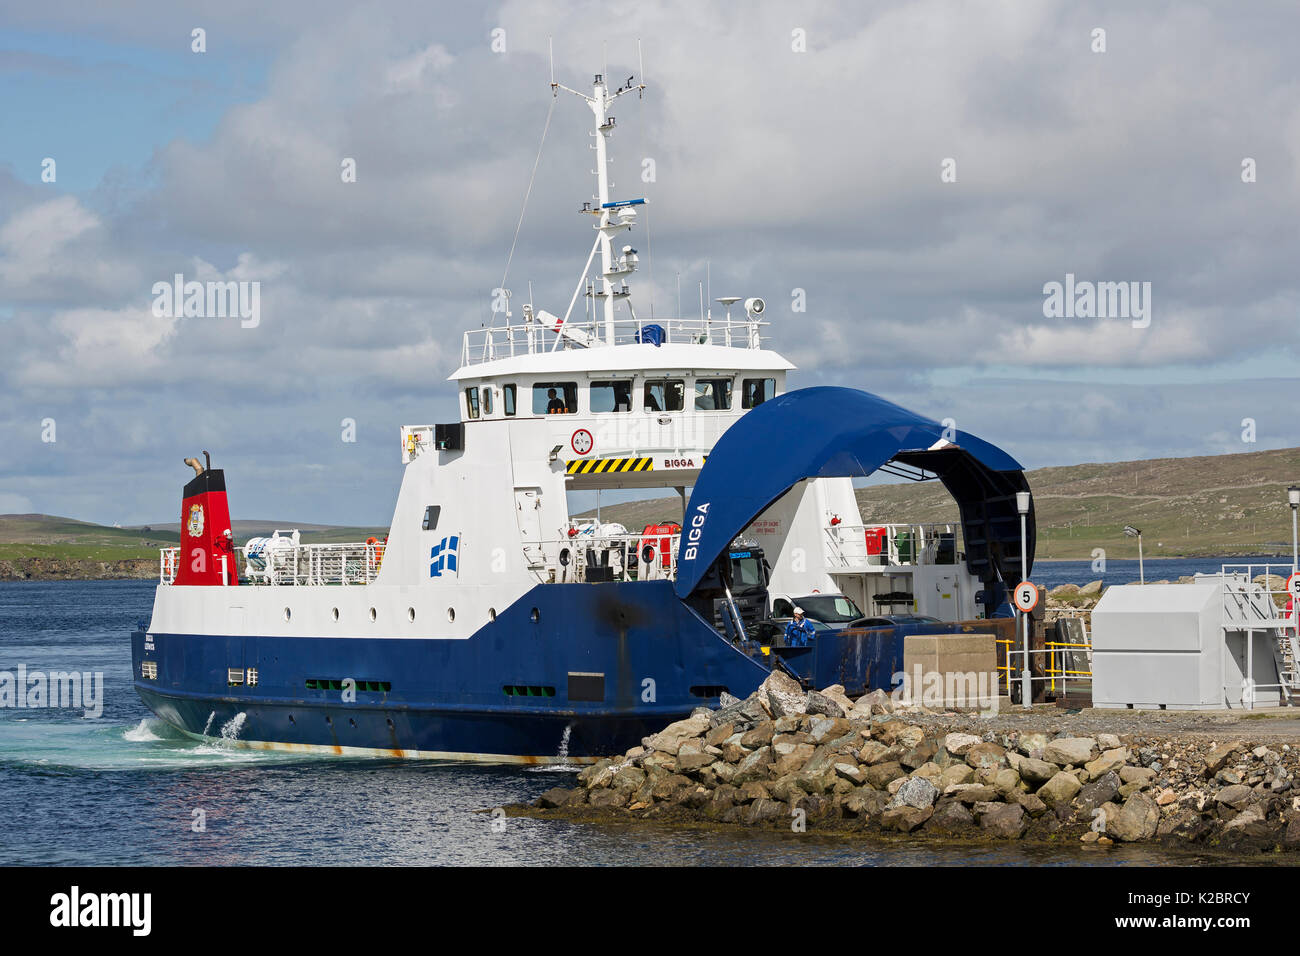 Inter-Island Fähre "Bigga" Schreien, einer der nördlichen Inseln von Shetland, Schottland. Alle nicht-redaktionelle Verwendungen muß einzeln beendet werden. Stockfoto